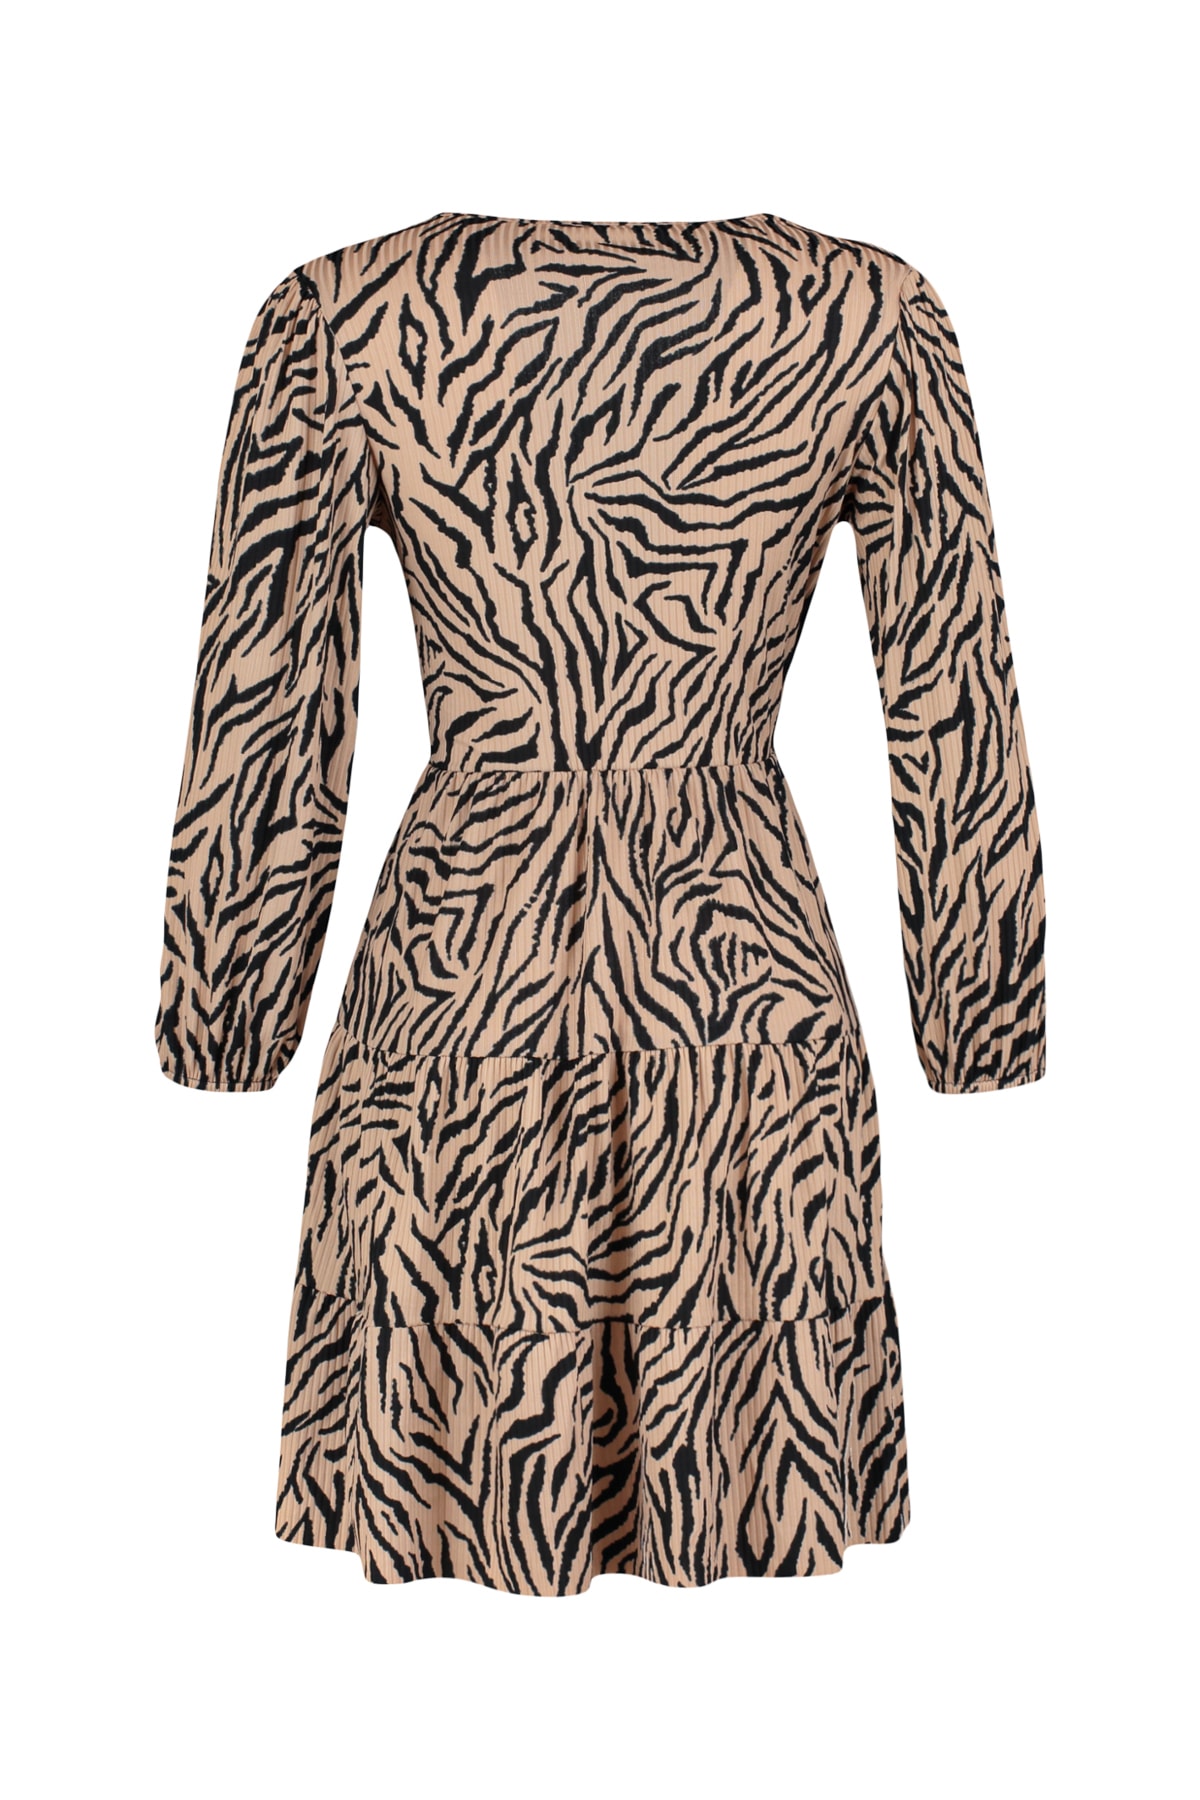 TRENDYOLMİLLA Kahverengi Zebra Desenli Kruvaze Yaka Mini Esnek Örme Elbise TWOAW22EL0104 RF10706